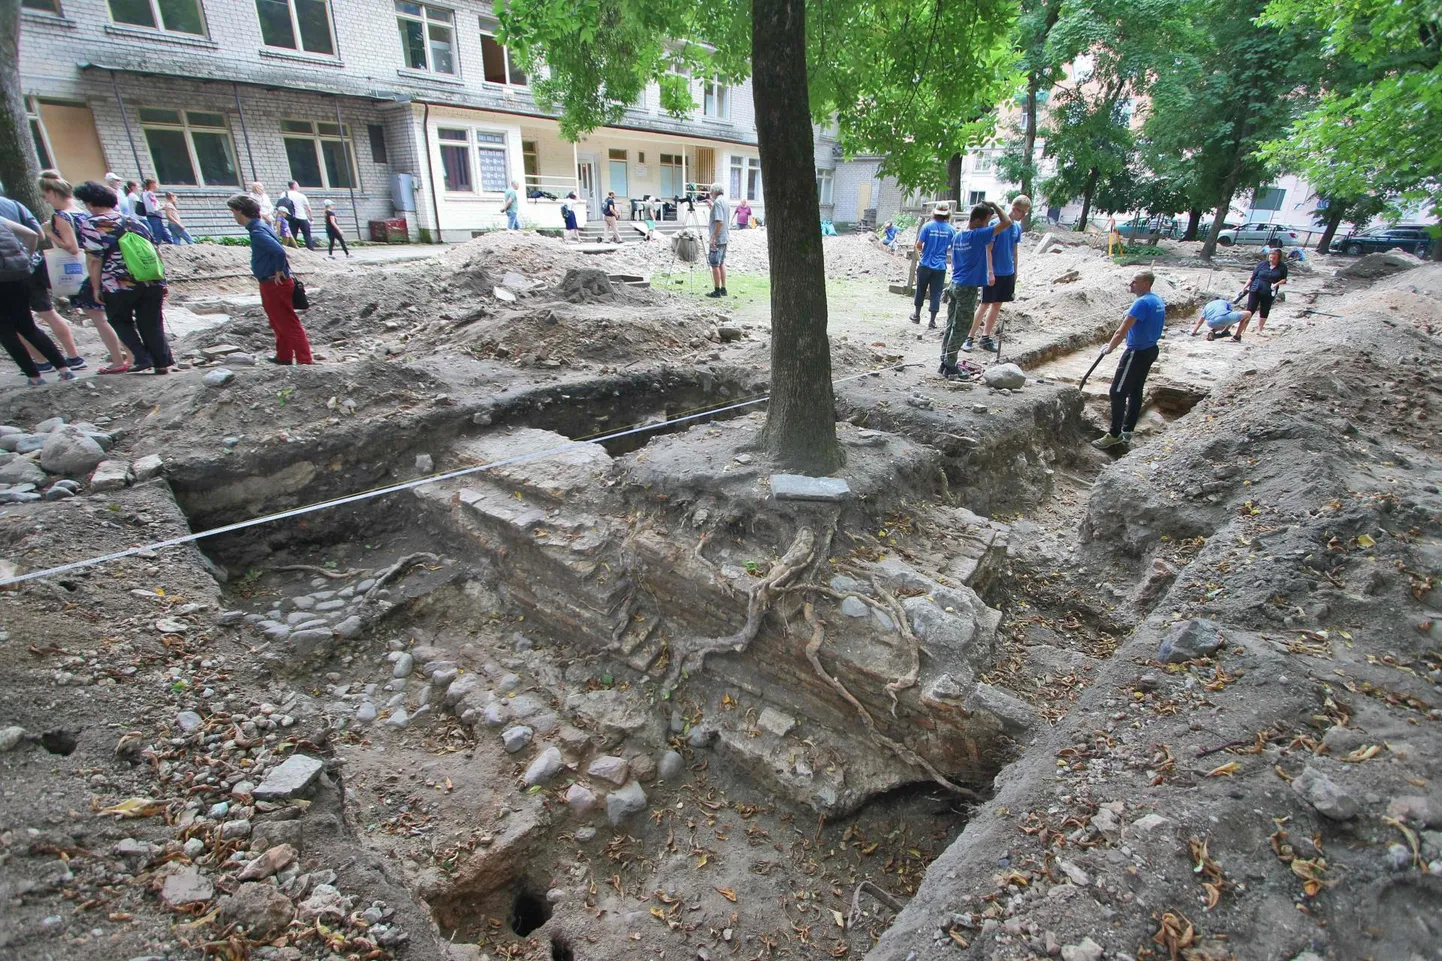 Vilniuse suure sünagoogi juures jätkuvad väljakaevamised veel mõni aasta. Rahusvaheline arheoloogide rühm koos vabatahtlikega on paljastanud nii mõndagi huvitavat hävinud linnakust, linna kunagisest vaimsest keskusest.